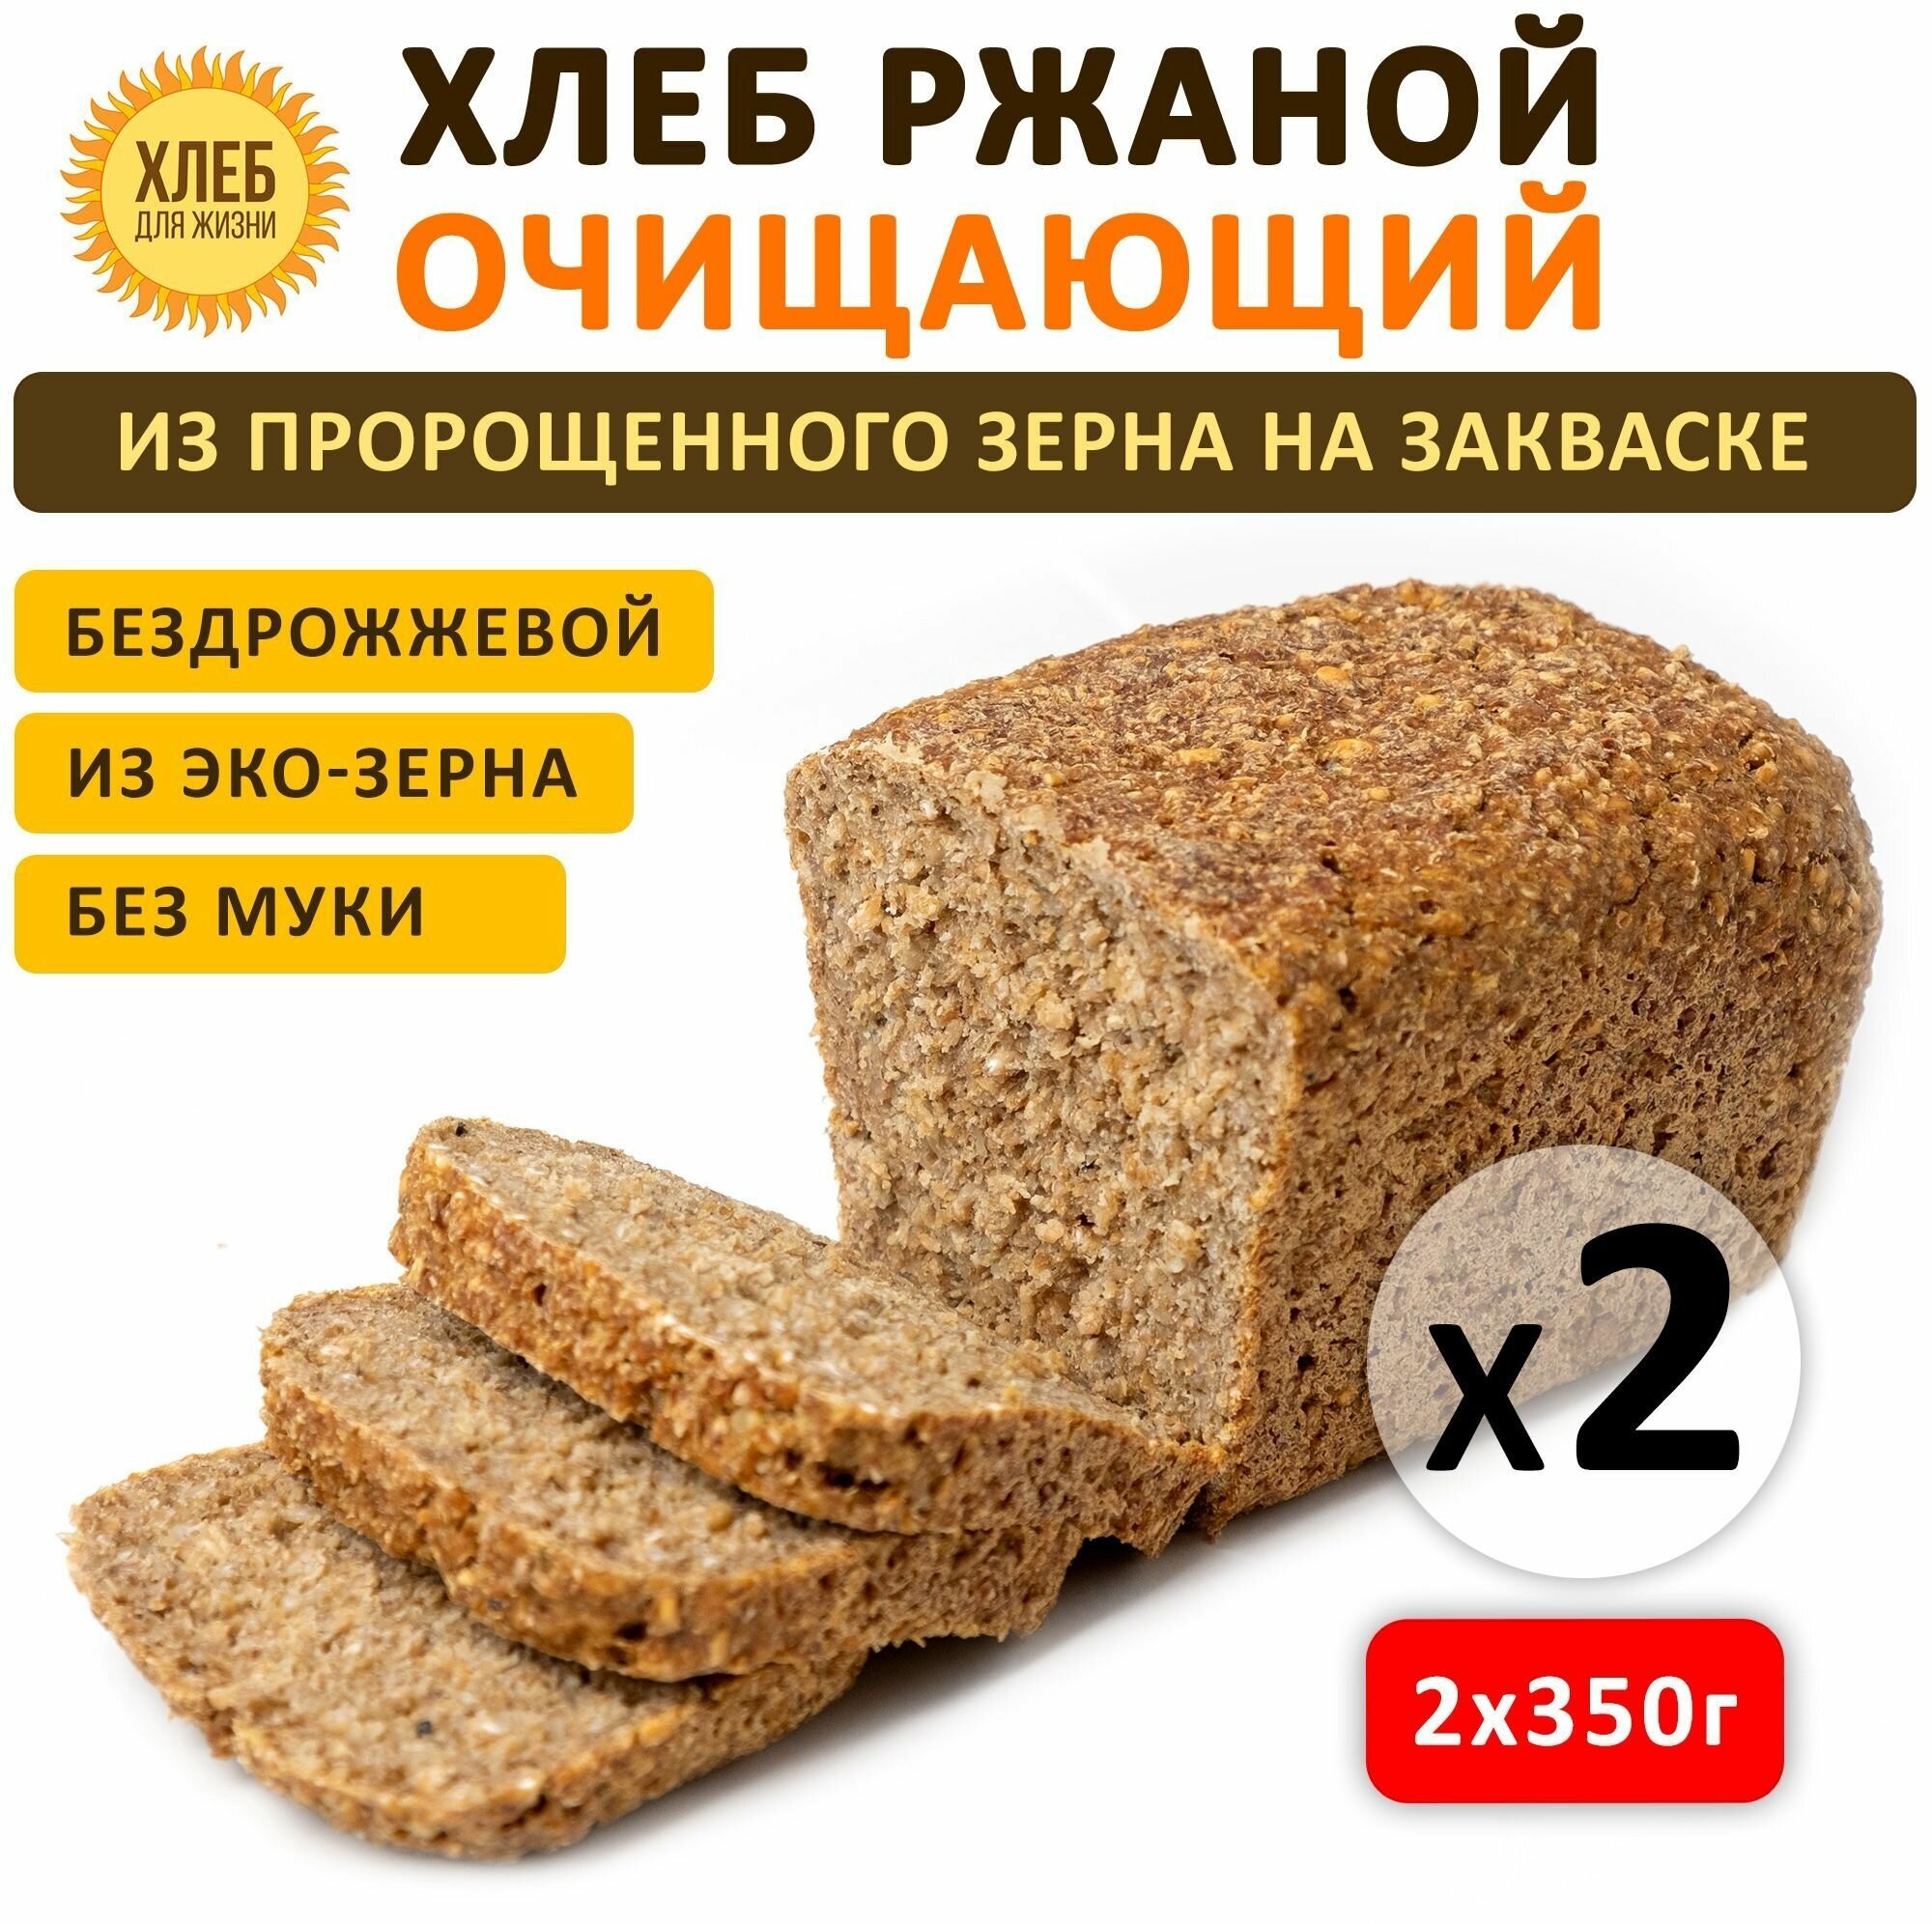 (2х350гр) Хлеб Ржаной очищающий, цельнозерновой, бездрожжевой, на закваске - Хлеб для Жизни